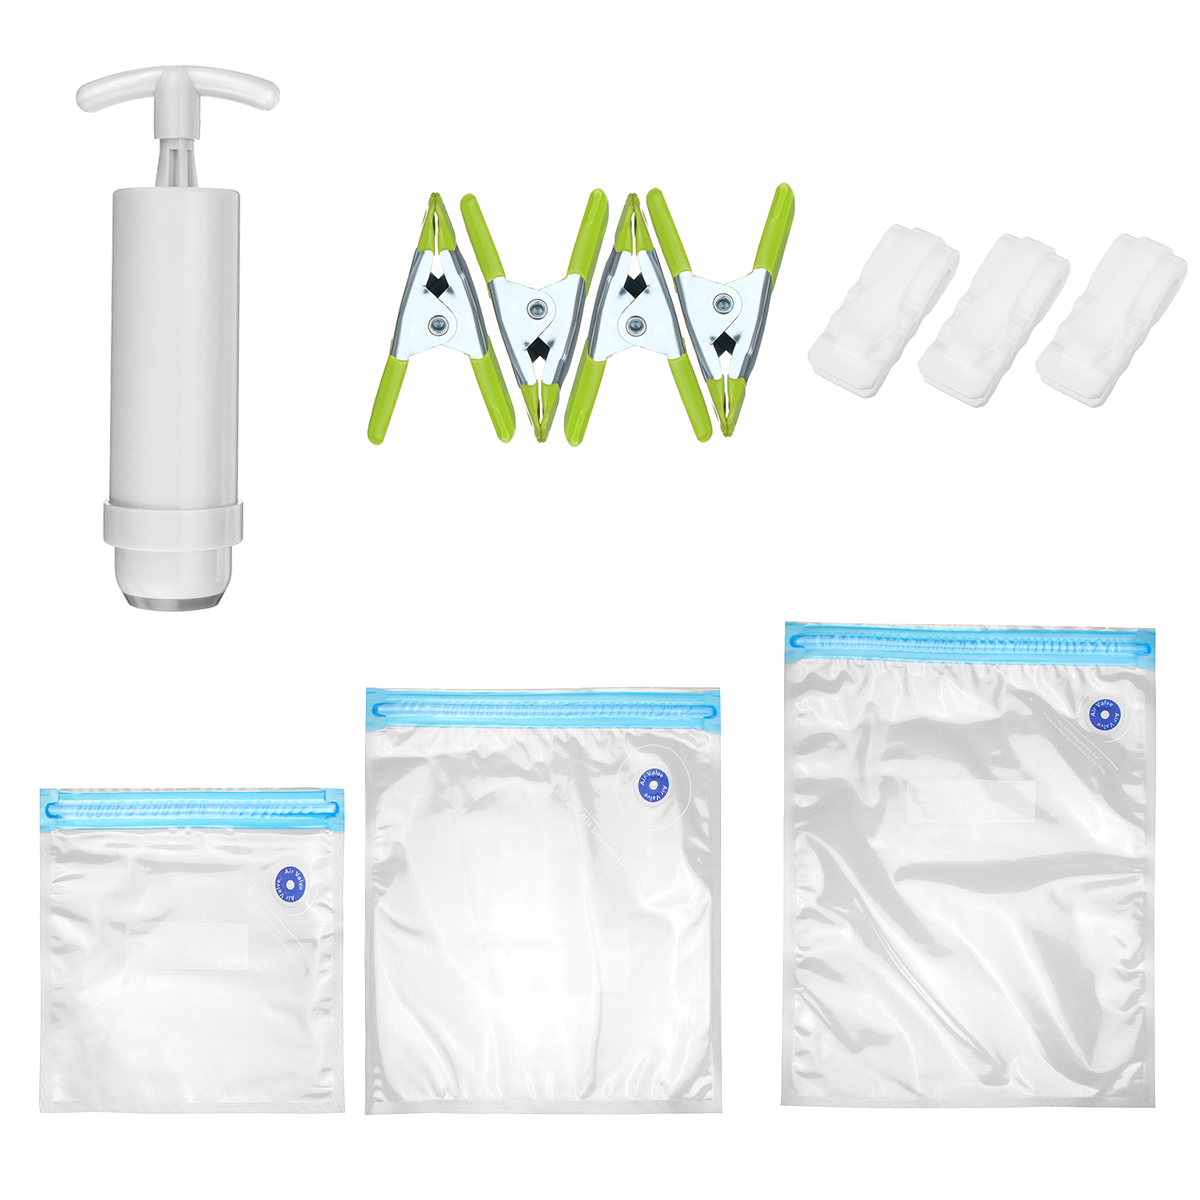 

38Pcs Reusable Food Vacuum Sealing Bag Label Packaging Storage Saver Bags with Manual Vacuum Pump